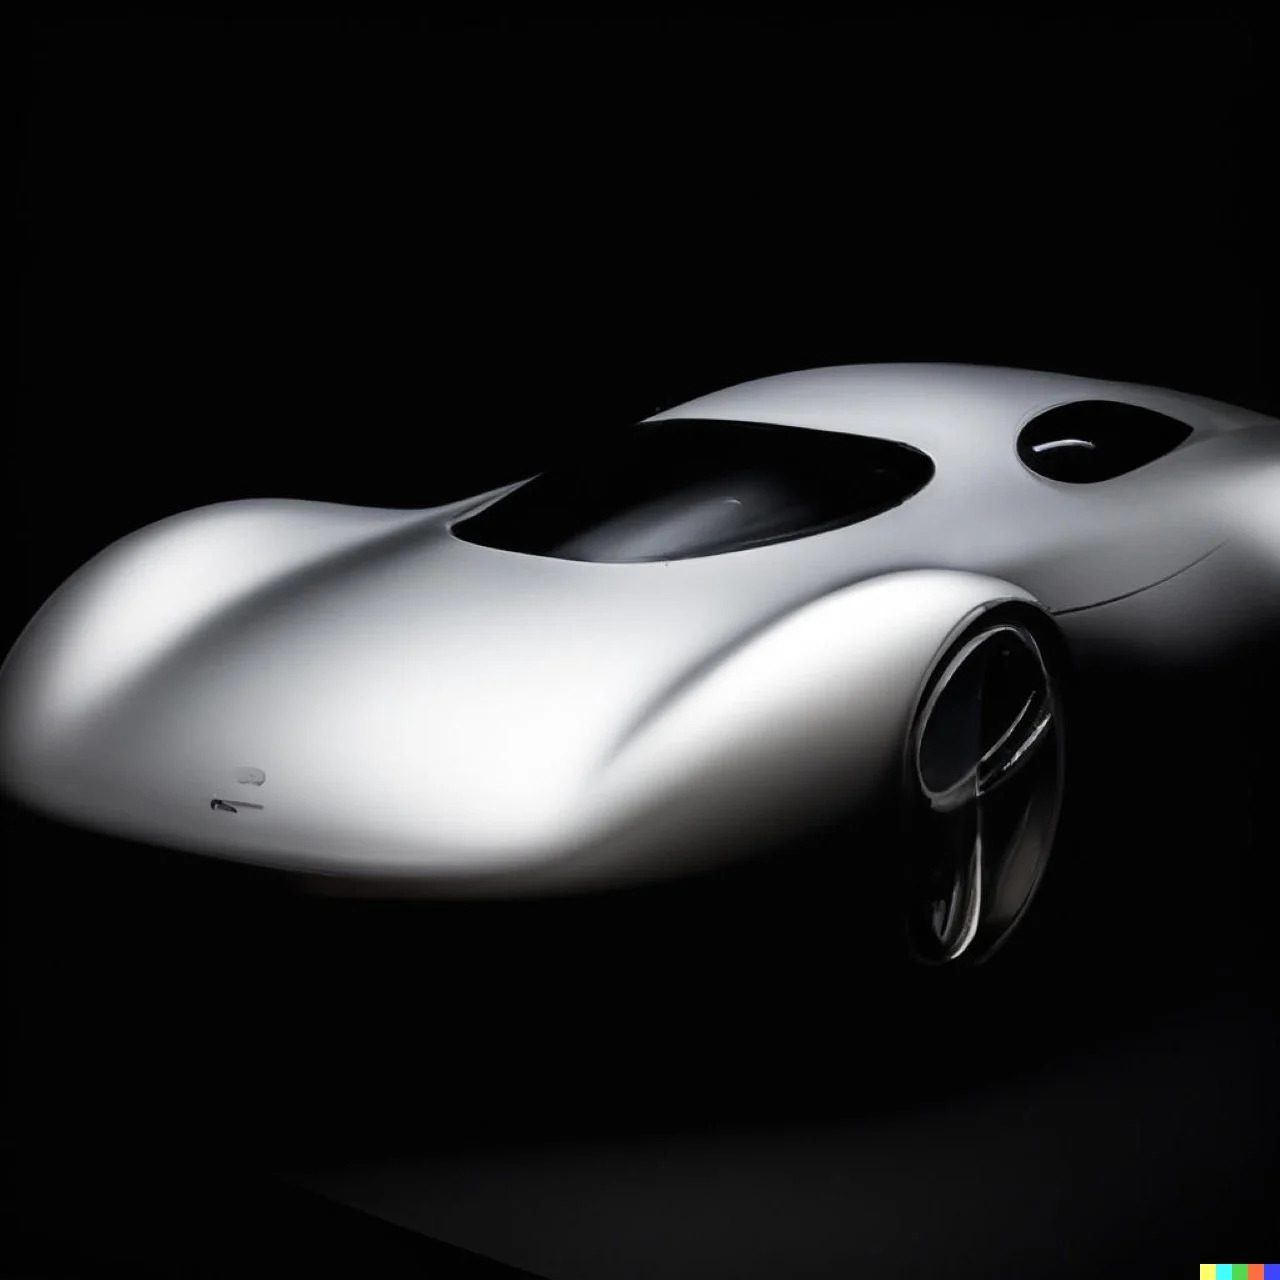 Dizajn Apple Car na tejto fotke nám pripomína vozidlá z 90-tých rokov